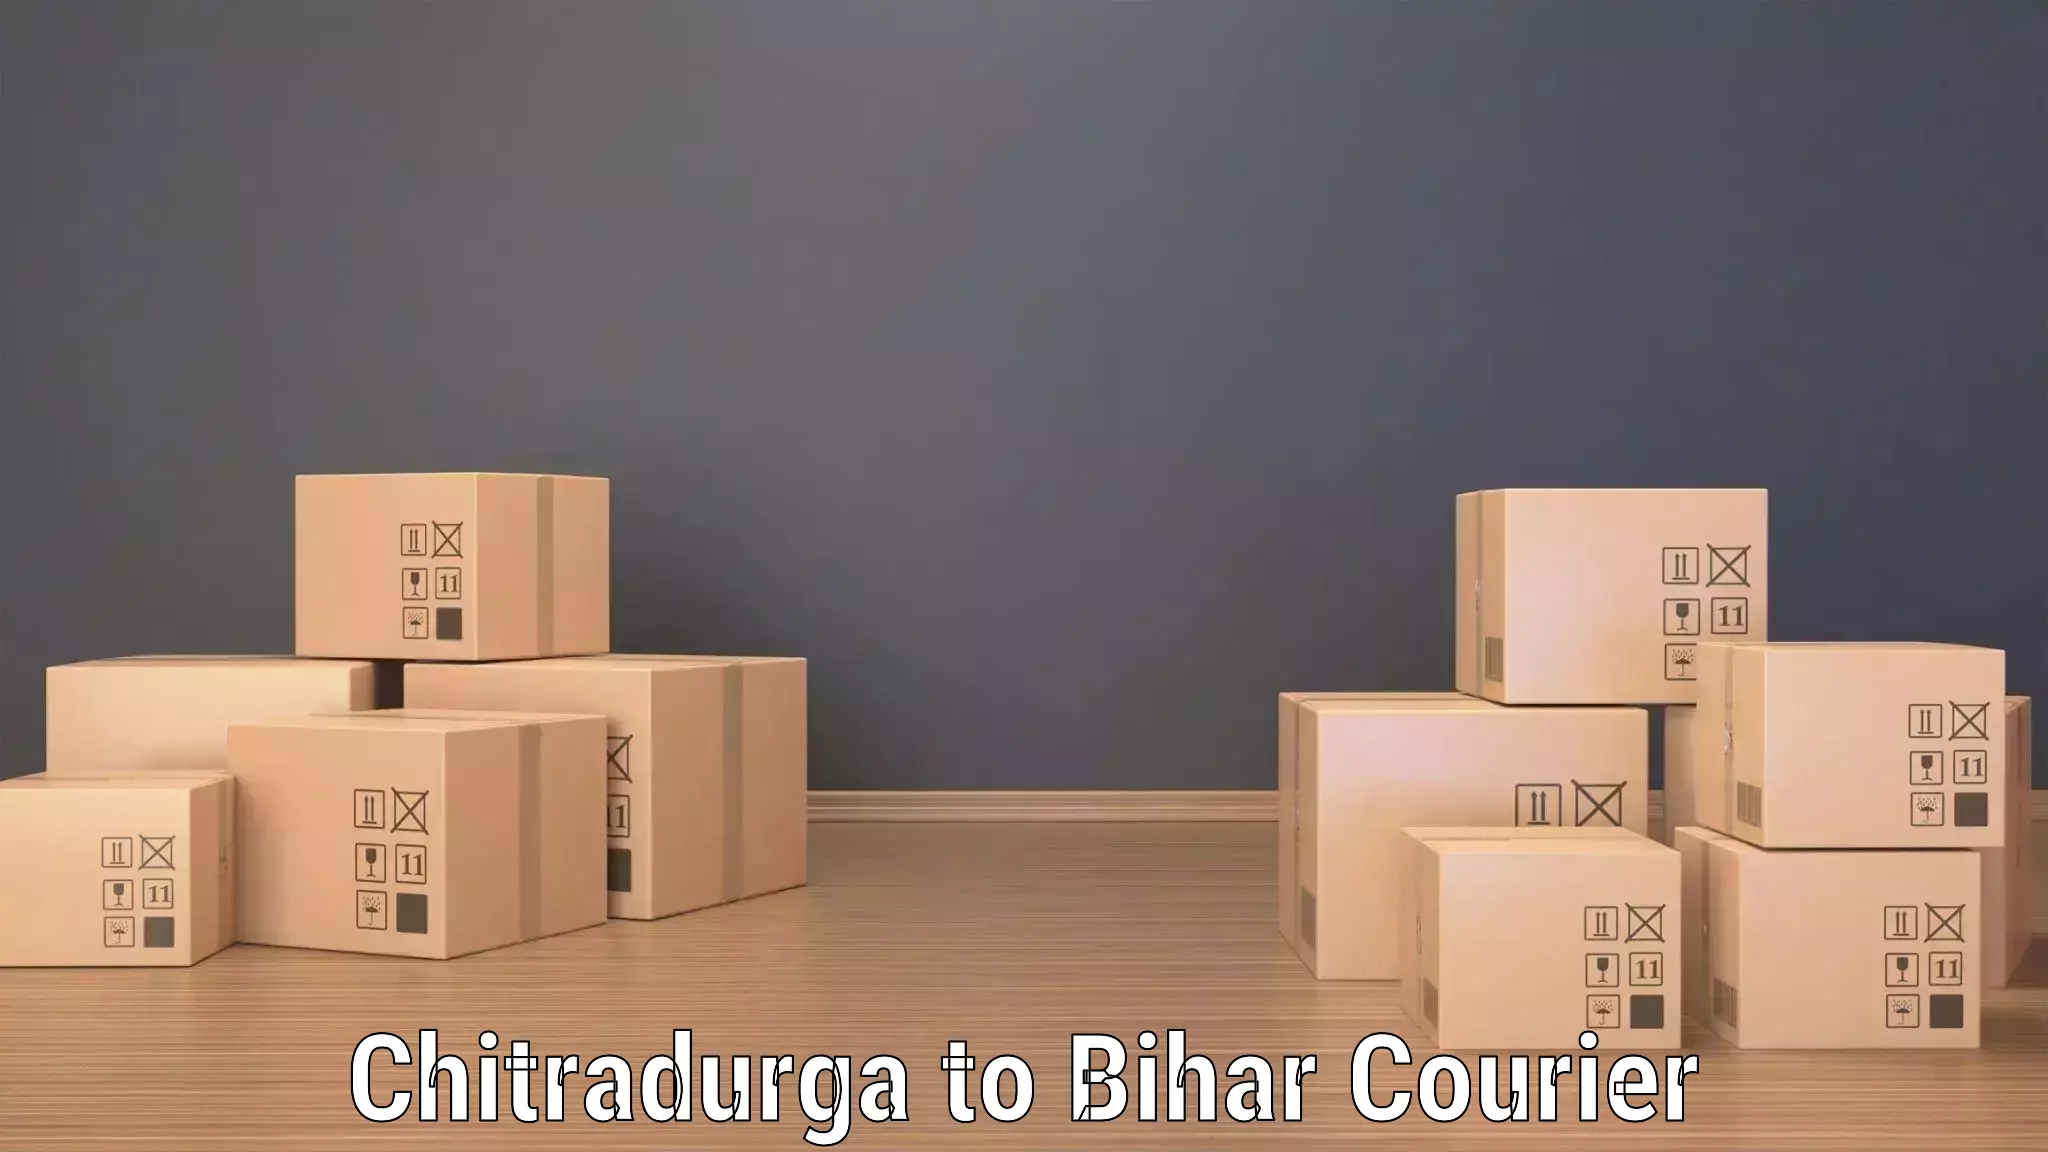 Next day courier Chitradurga to Saharsa